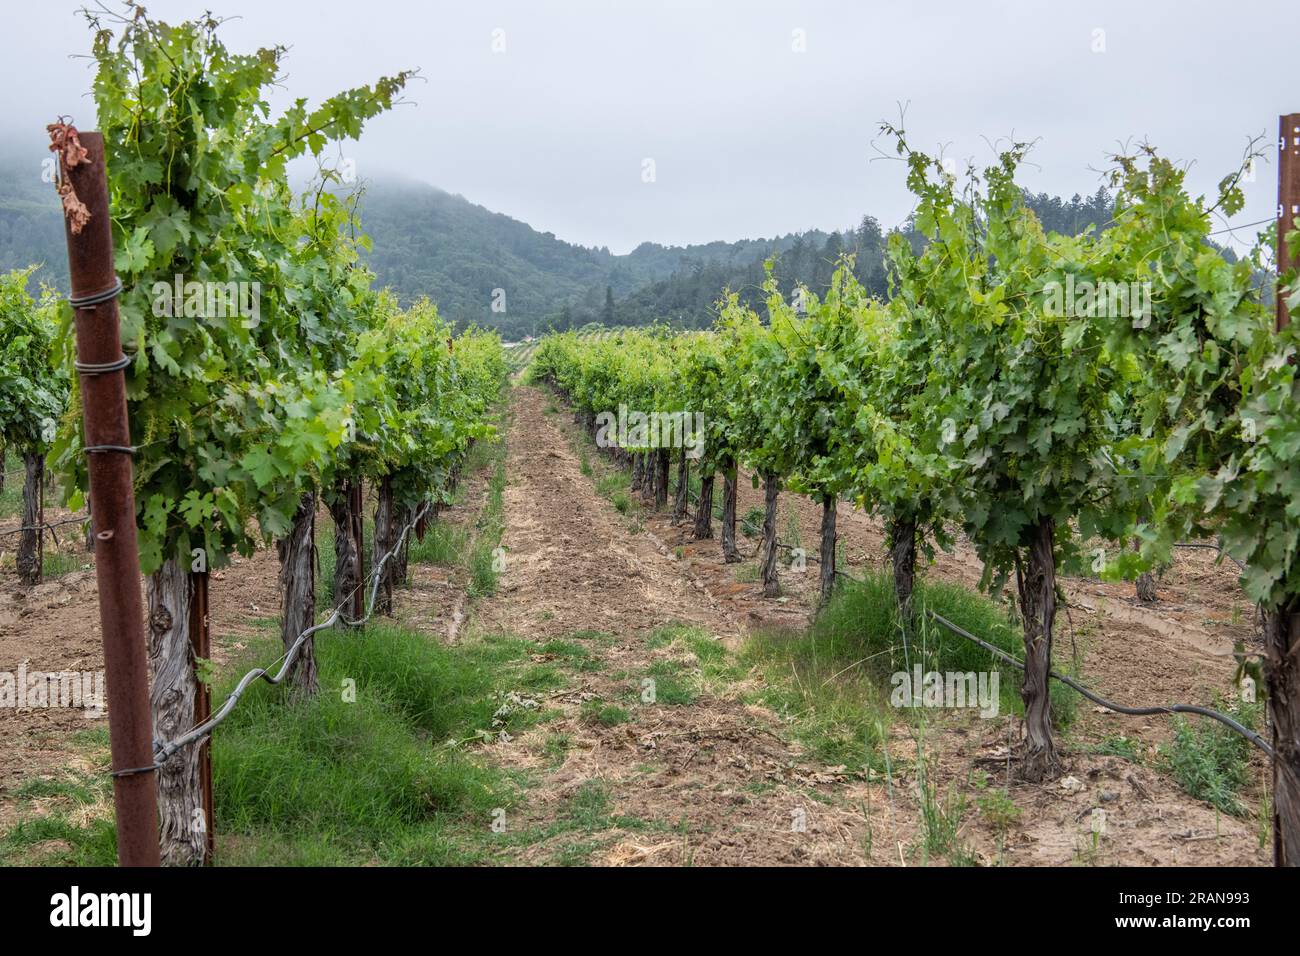 Vigneto e uva destinati alla produzione di vino nella contea di Sonoma, California. Un importante centro per la viticoltura in Nord America. Foto Stock